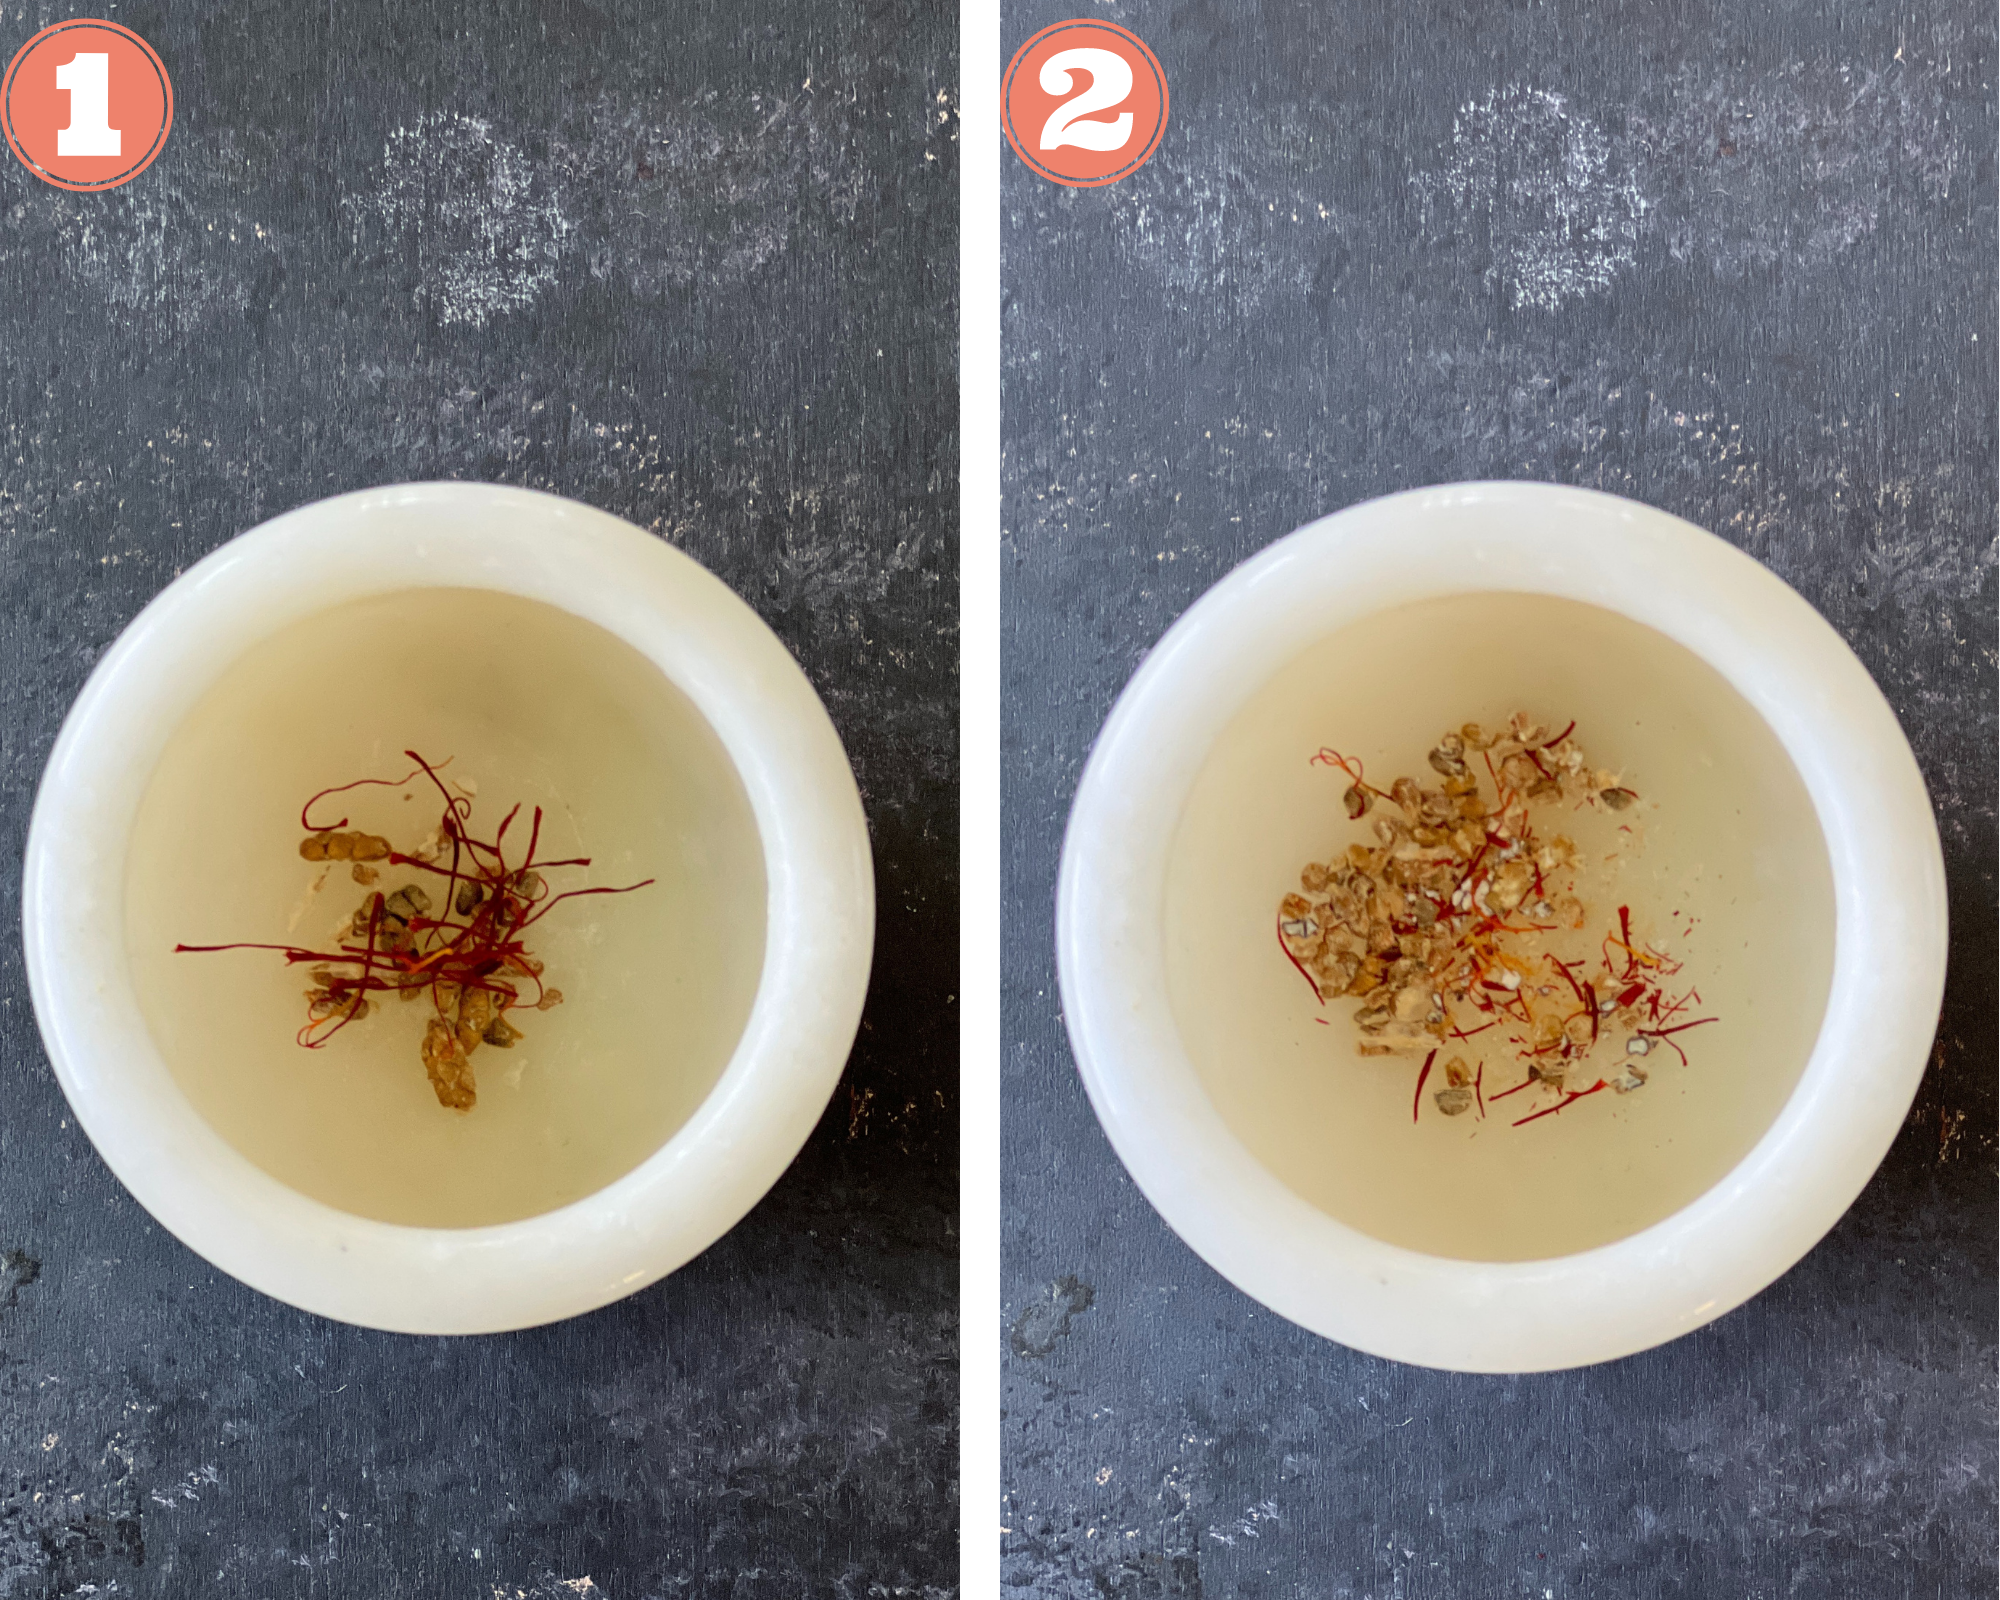 How to make Mango lassi: Crush cardamom and saffron in a mortar pestle.